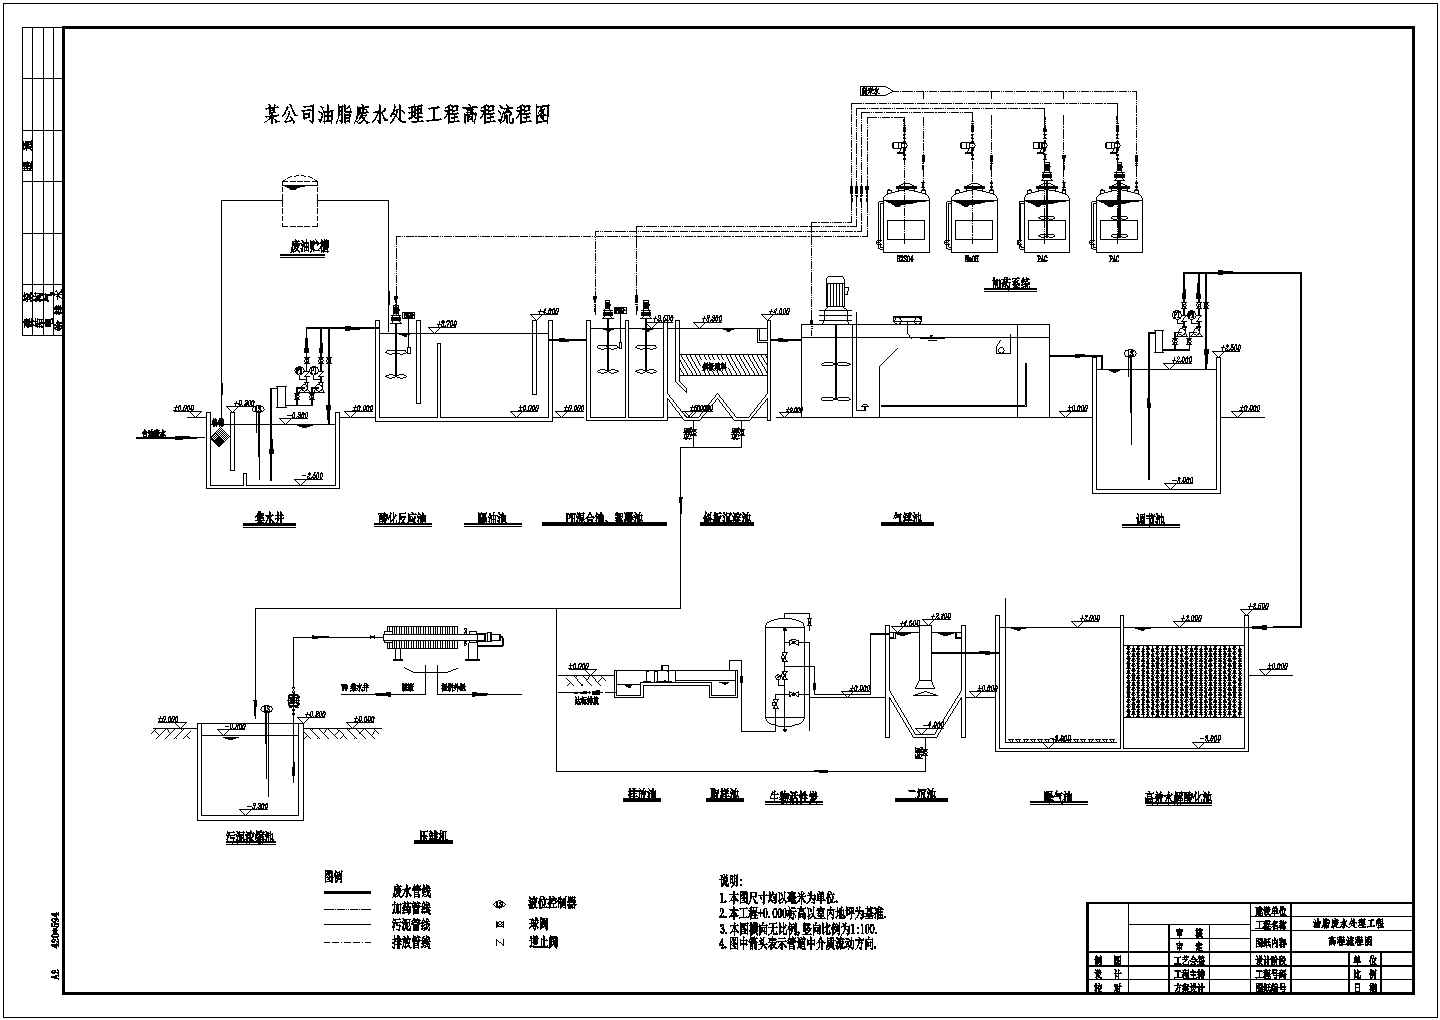 某公司油脂废水处理工程流程图cad施工图设计